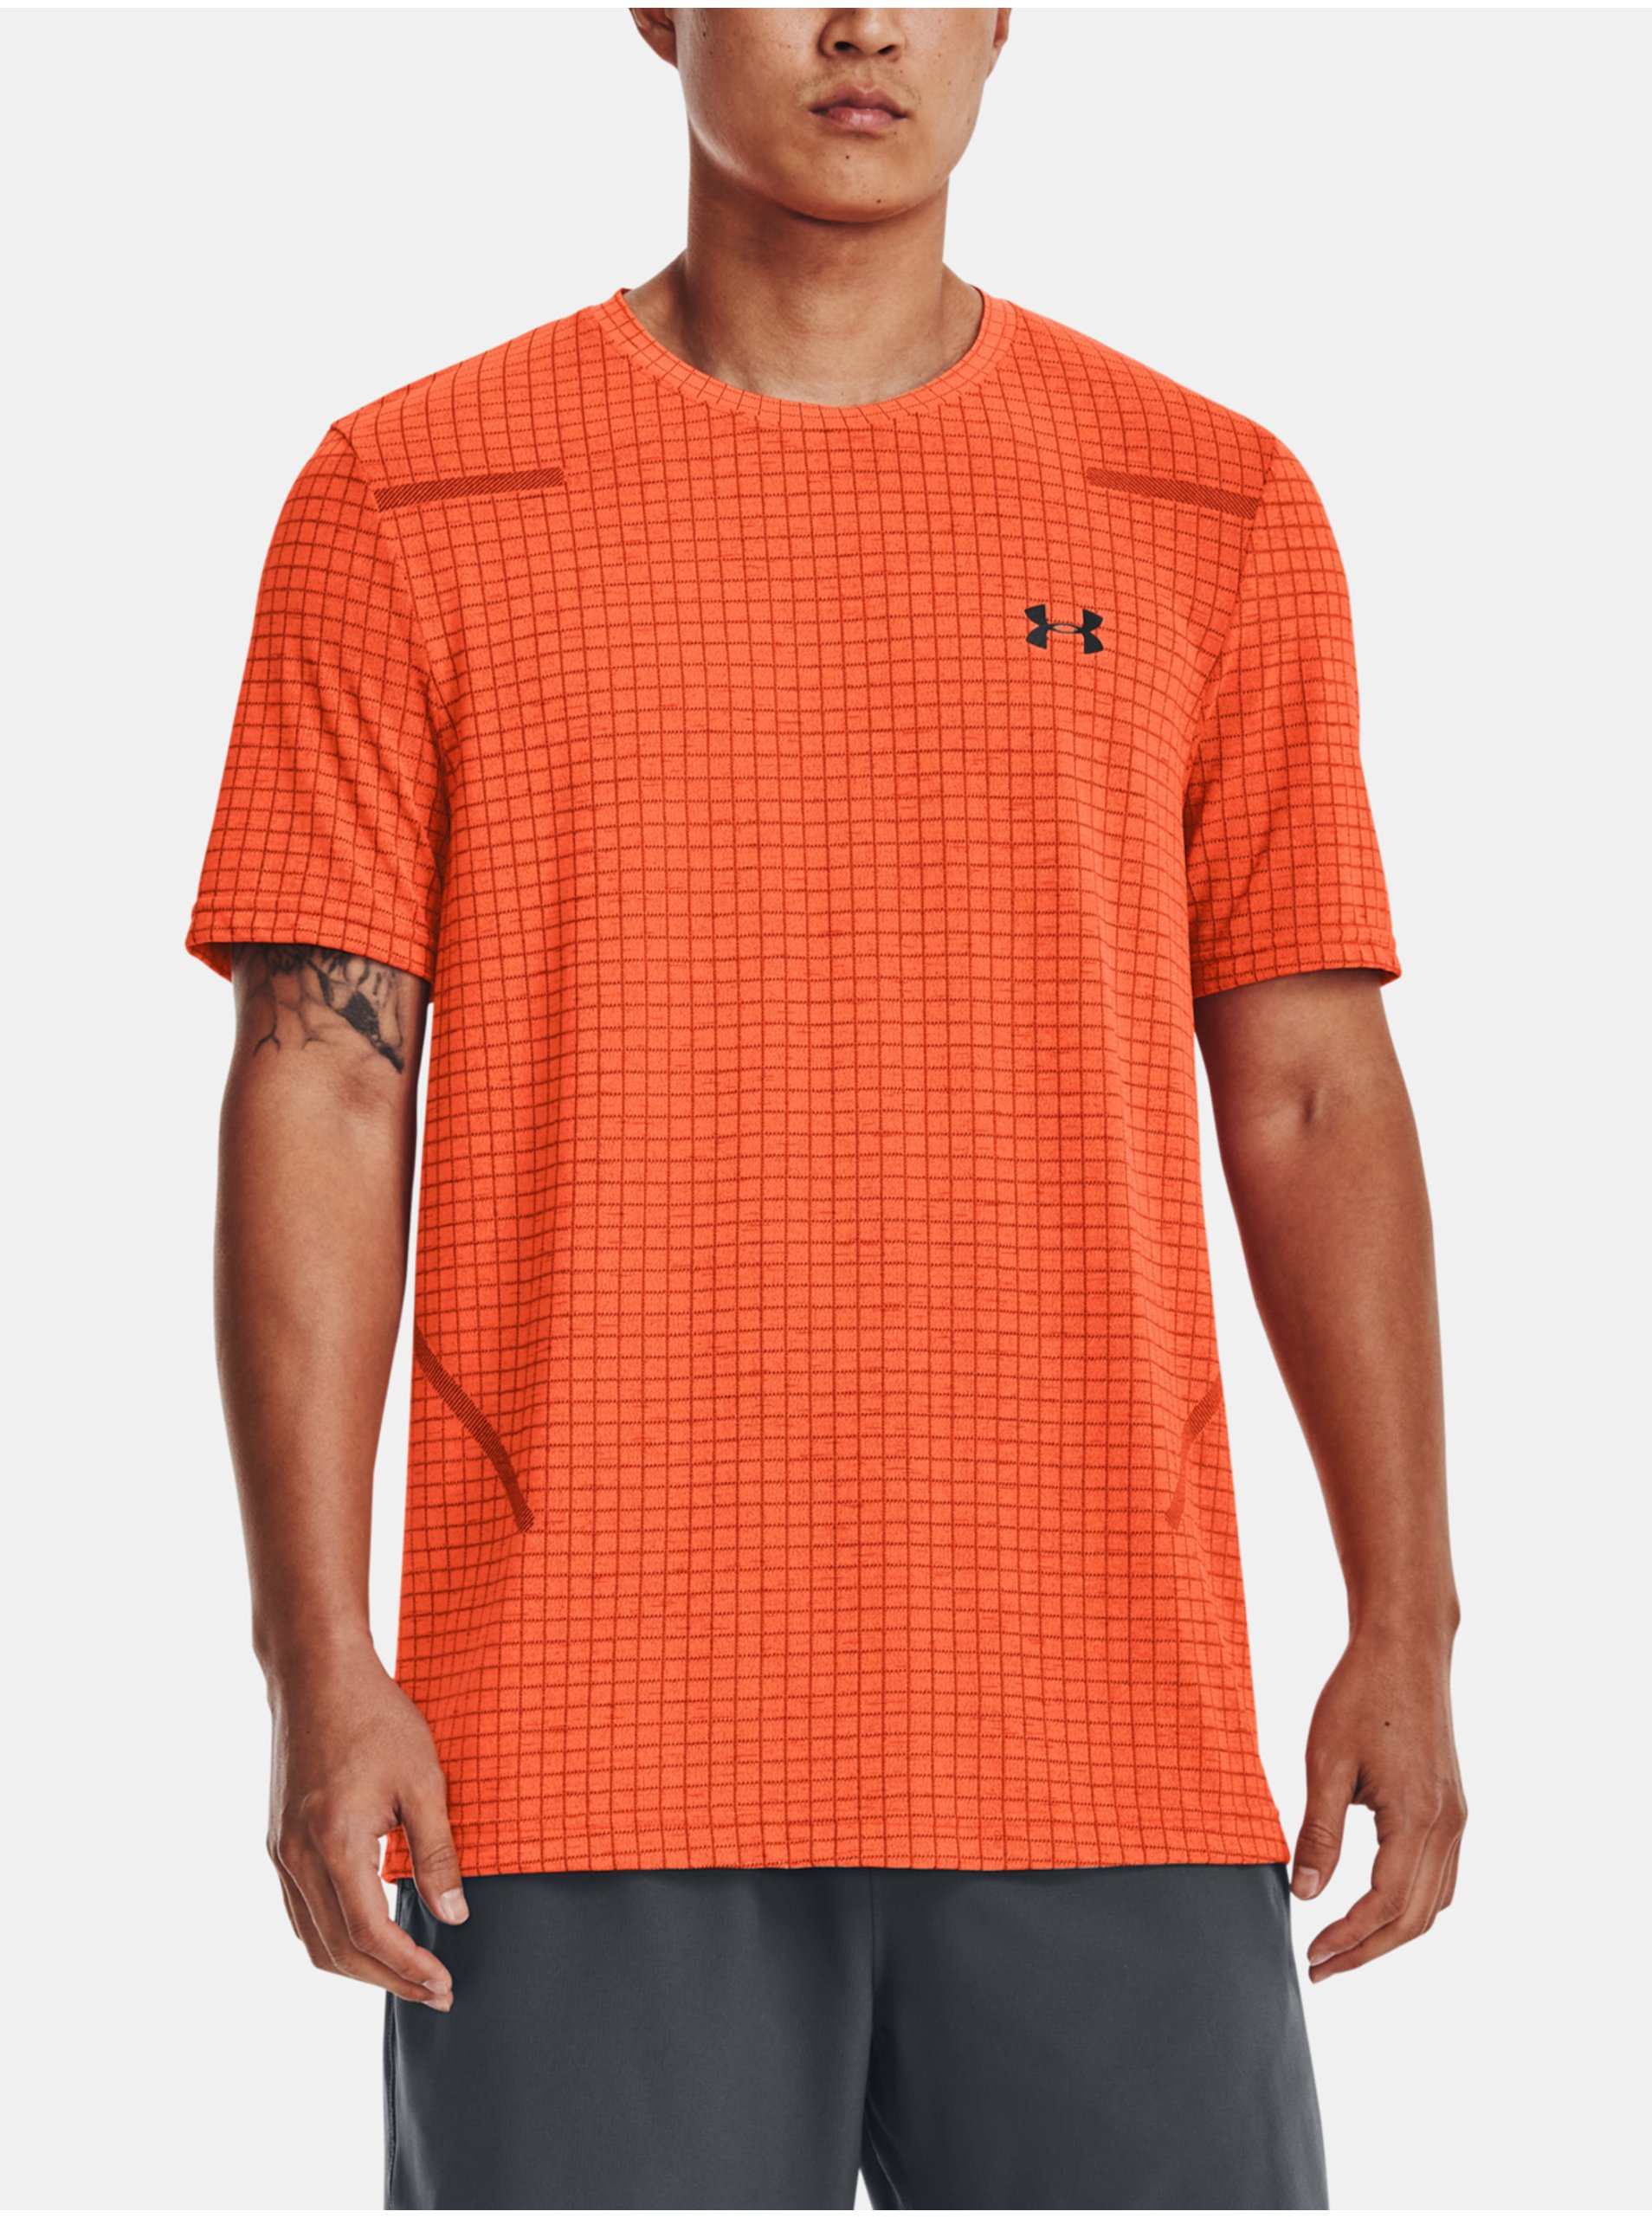 Lacno Oranžové športové tričko Under Armour UA Seamless Grid